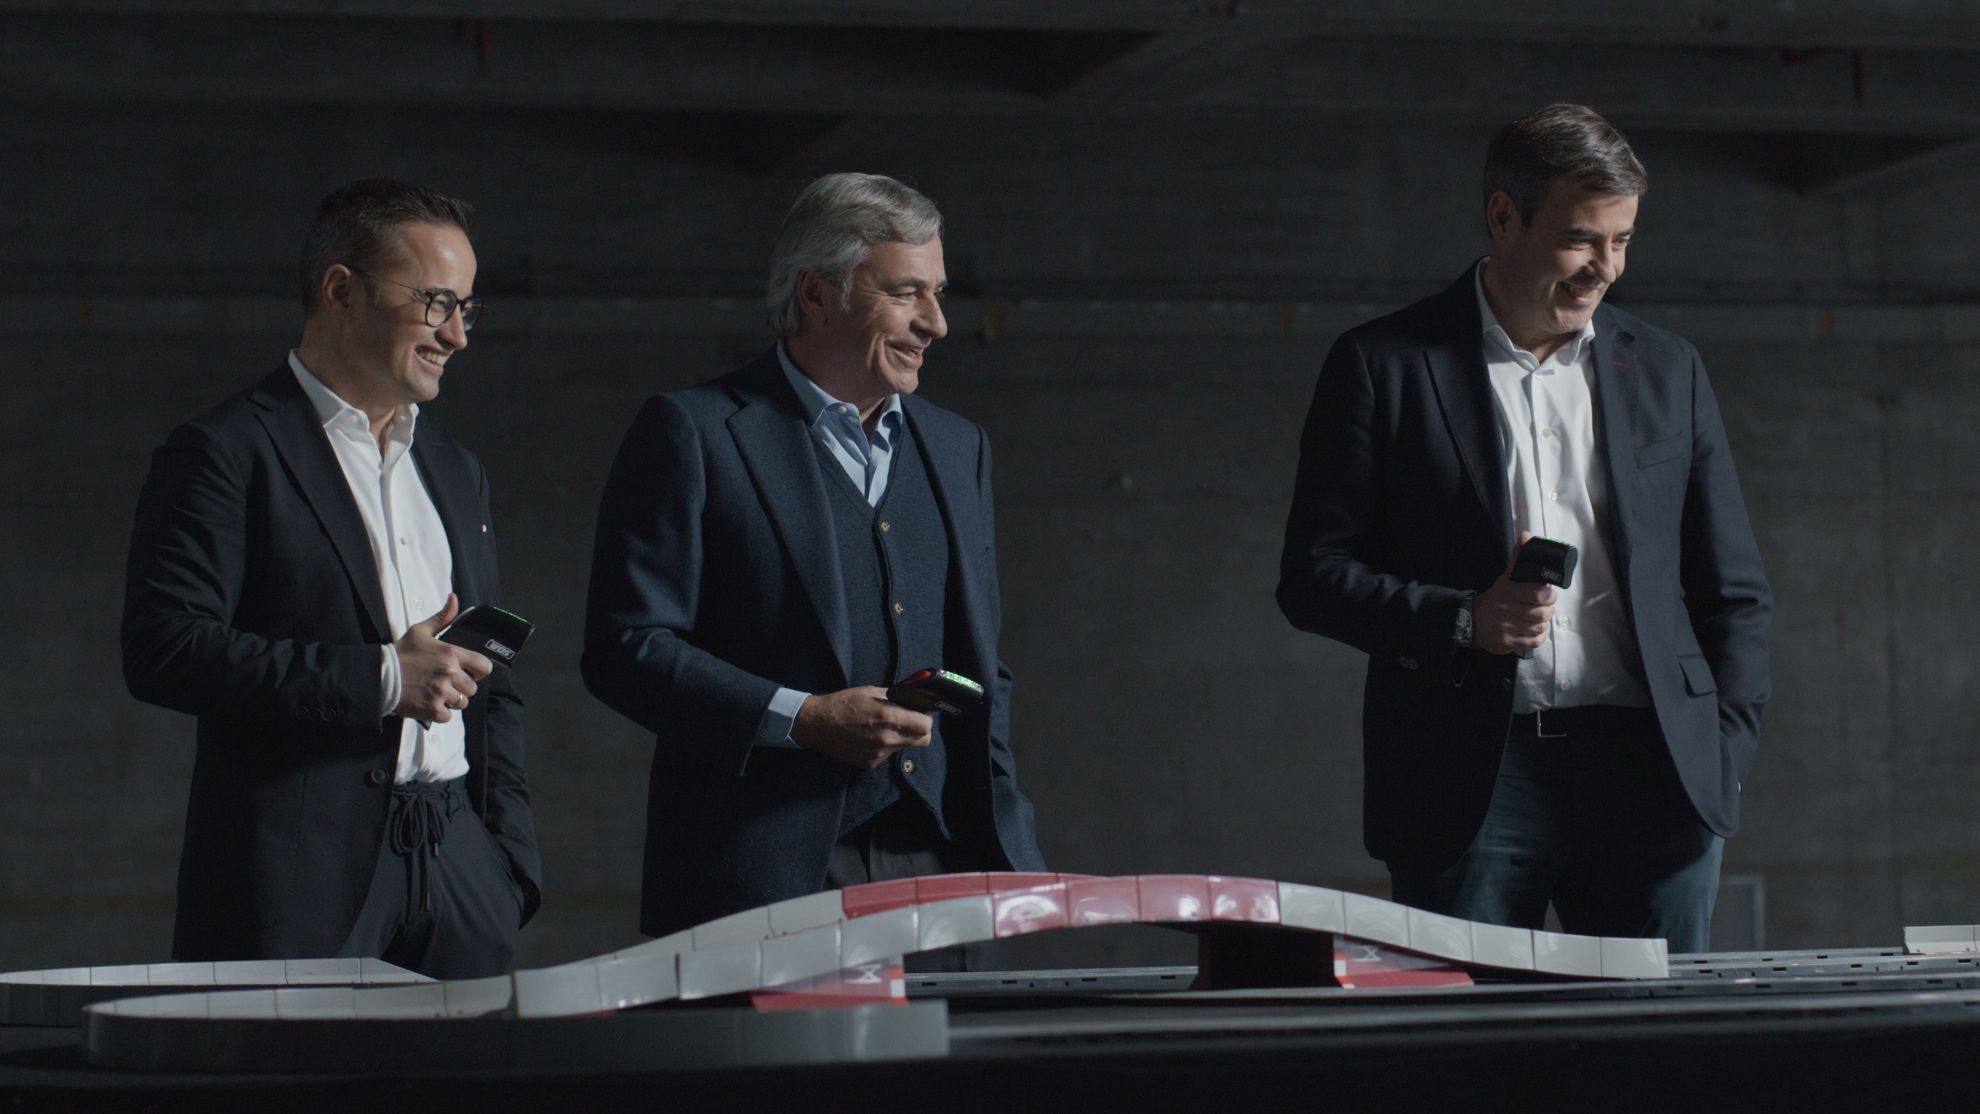 Carlos Sainz y Audi: historia, presente y futuro en el mundo del automóvil